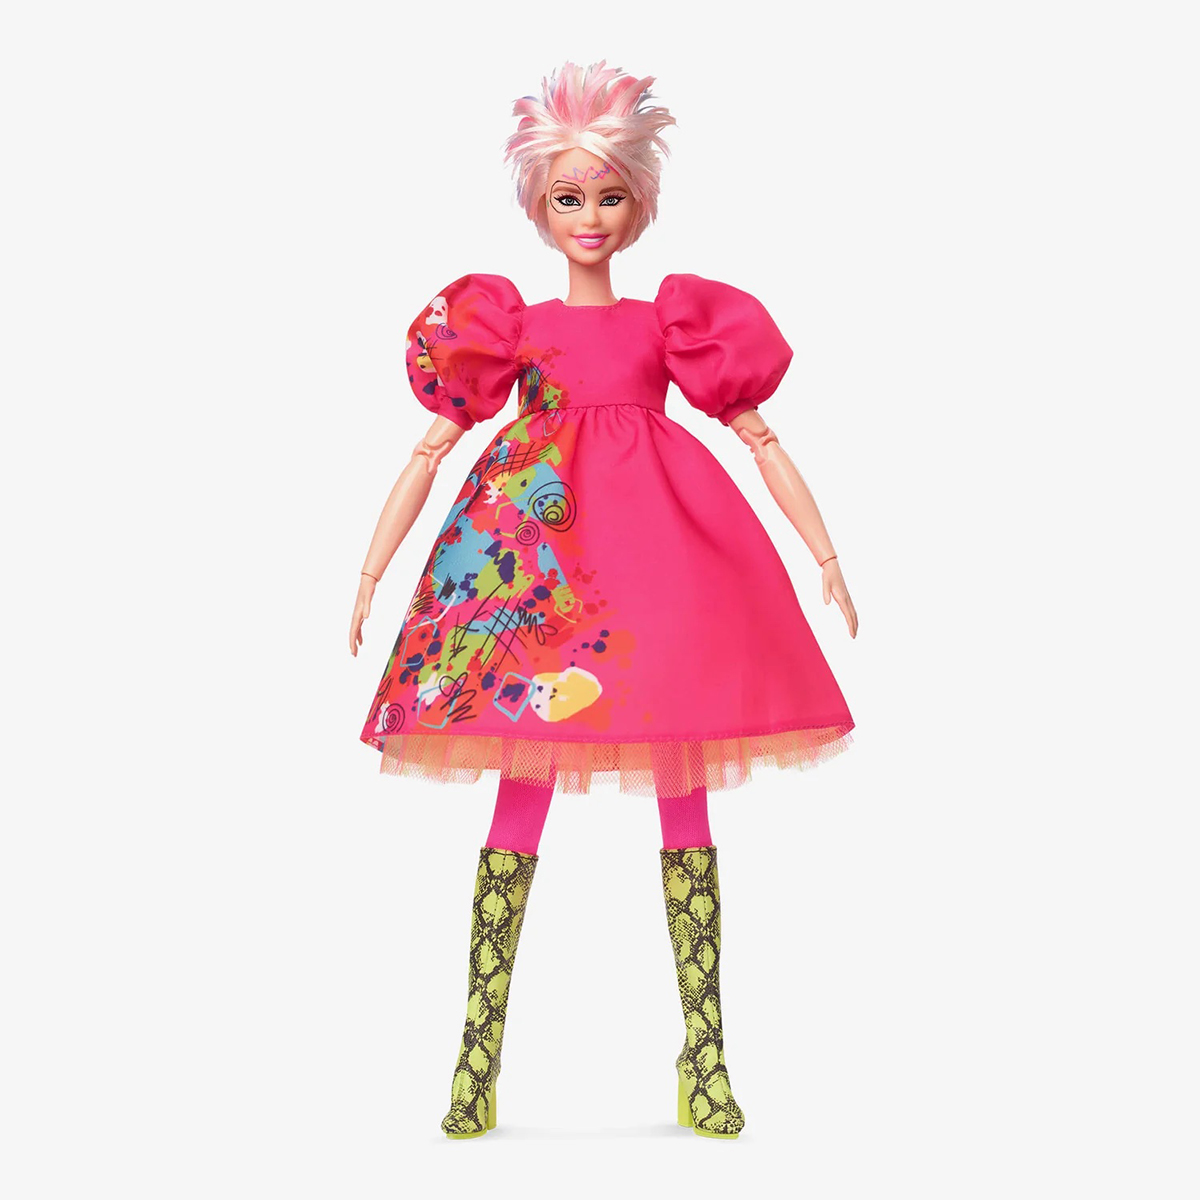 Barbie Bizarre », Mattel capitalise sur le succès du film en